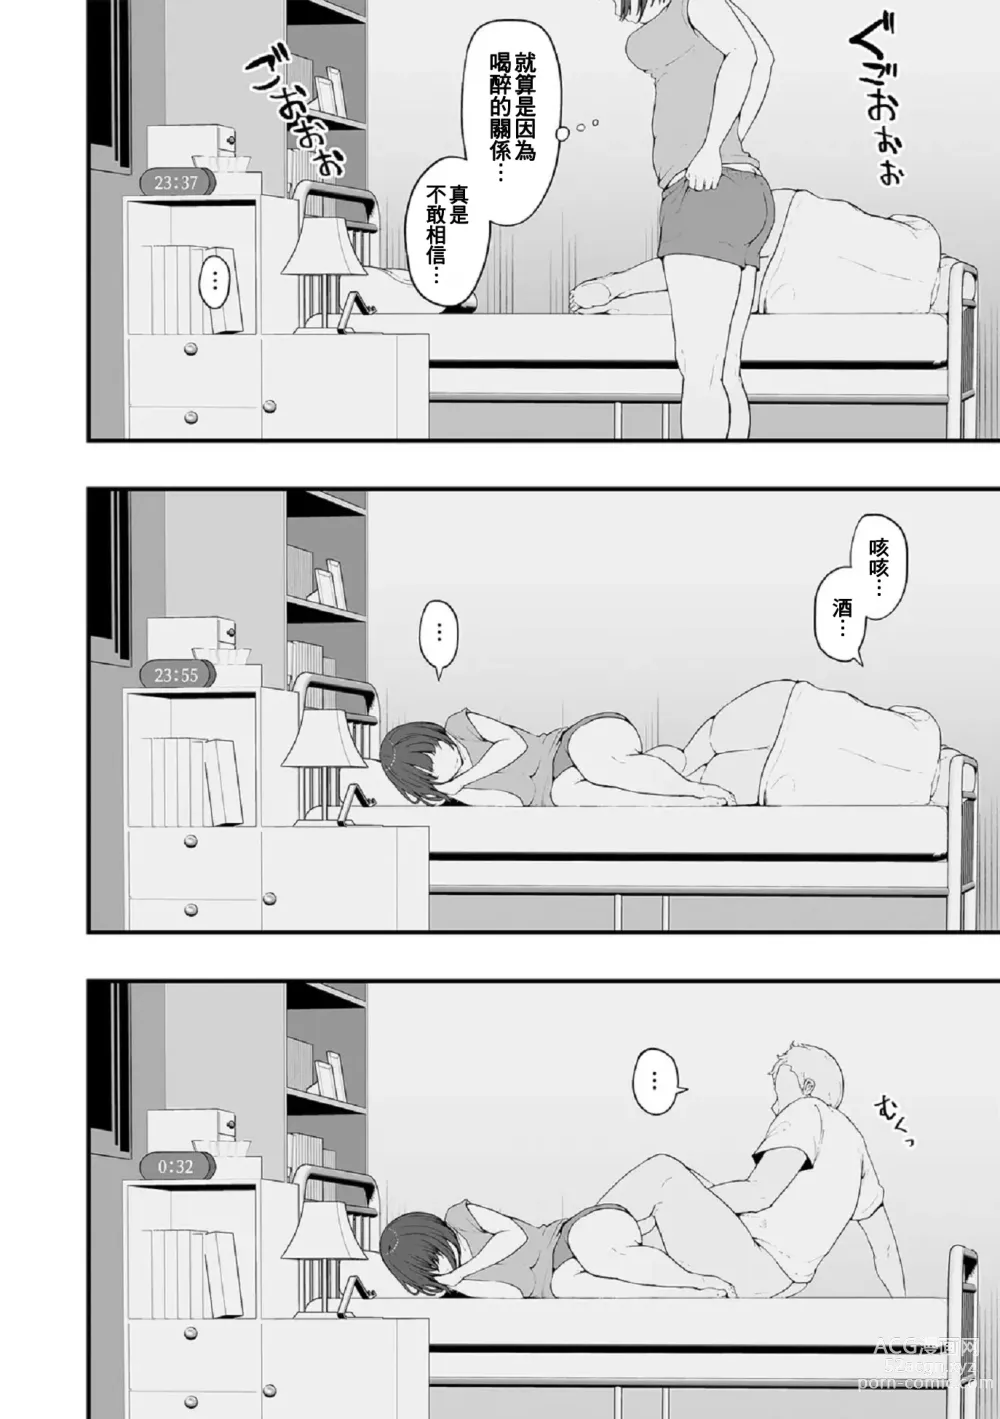 Page 17 of manga Honou ni wa Katenakatta 1